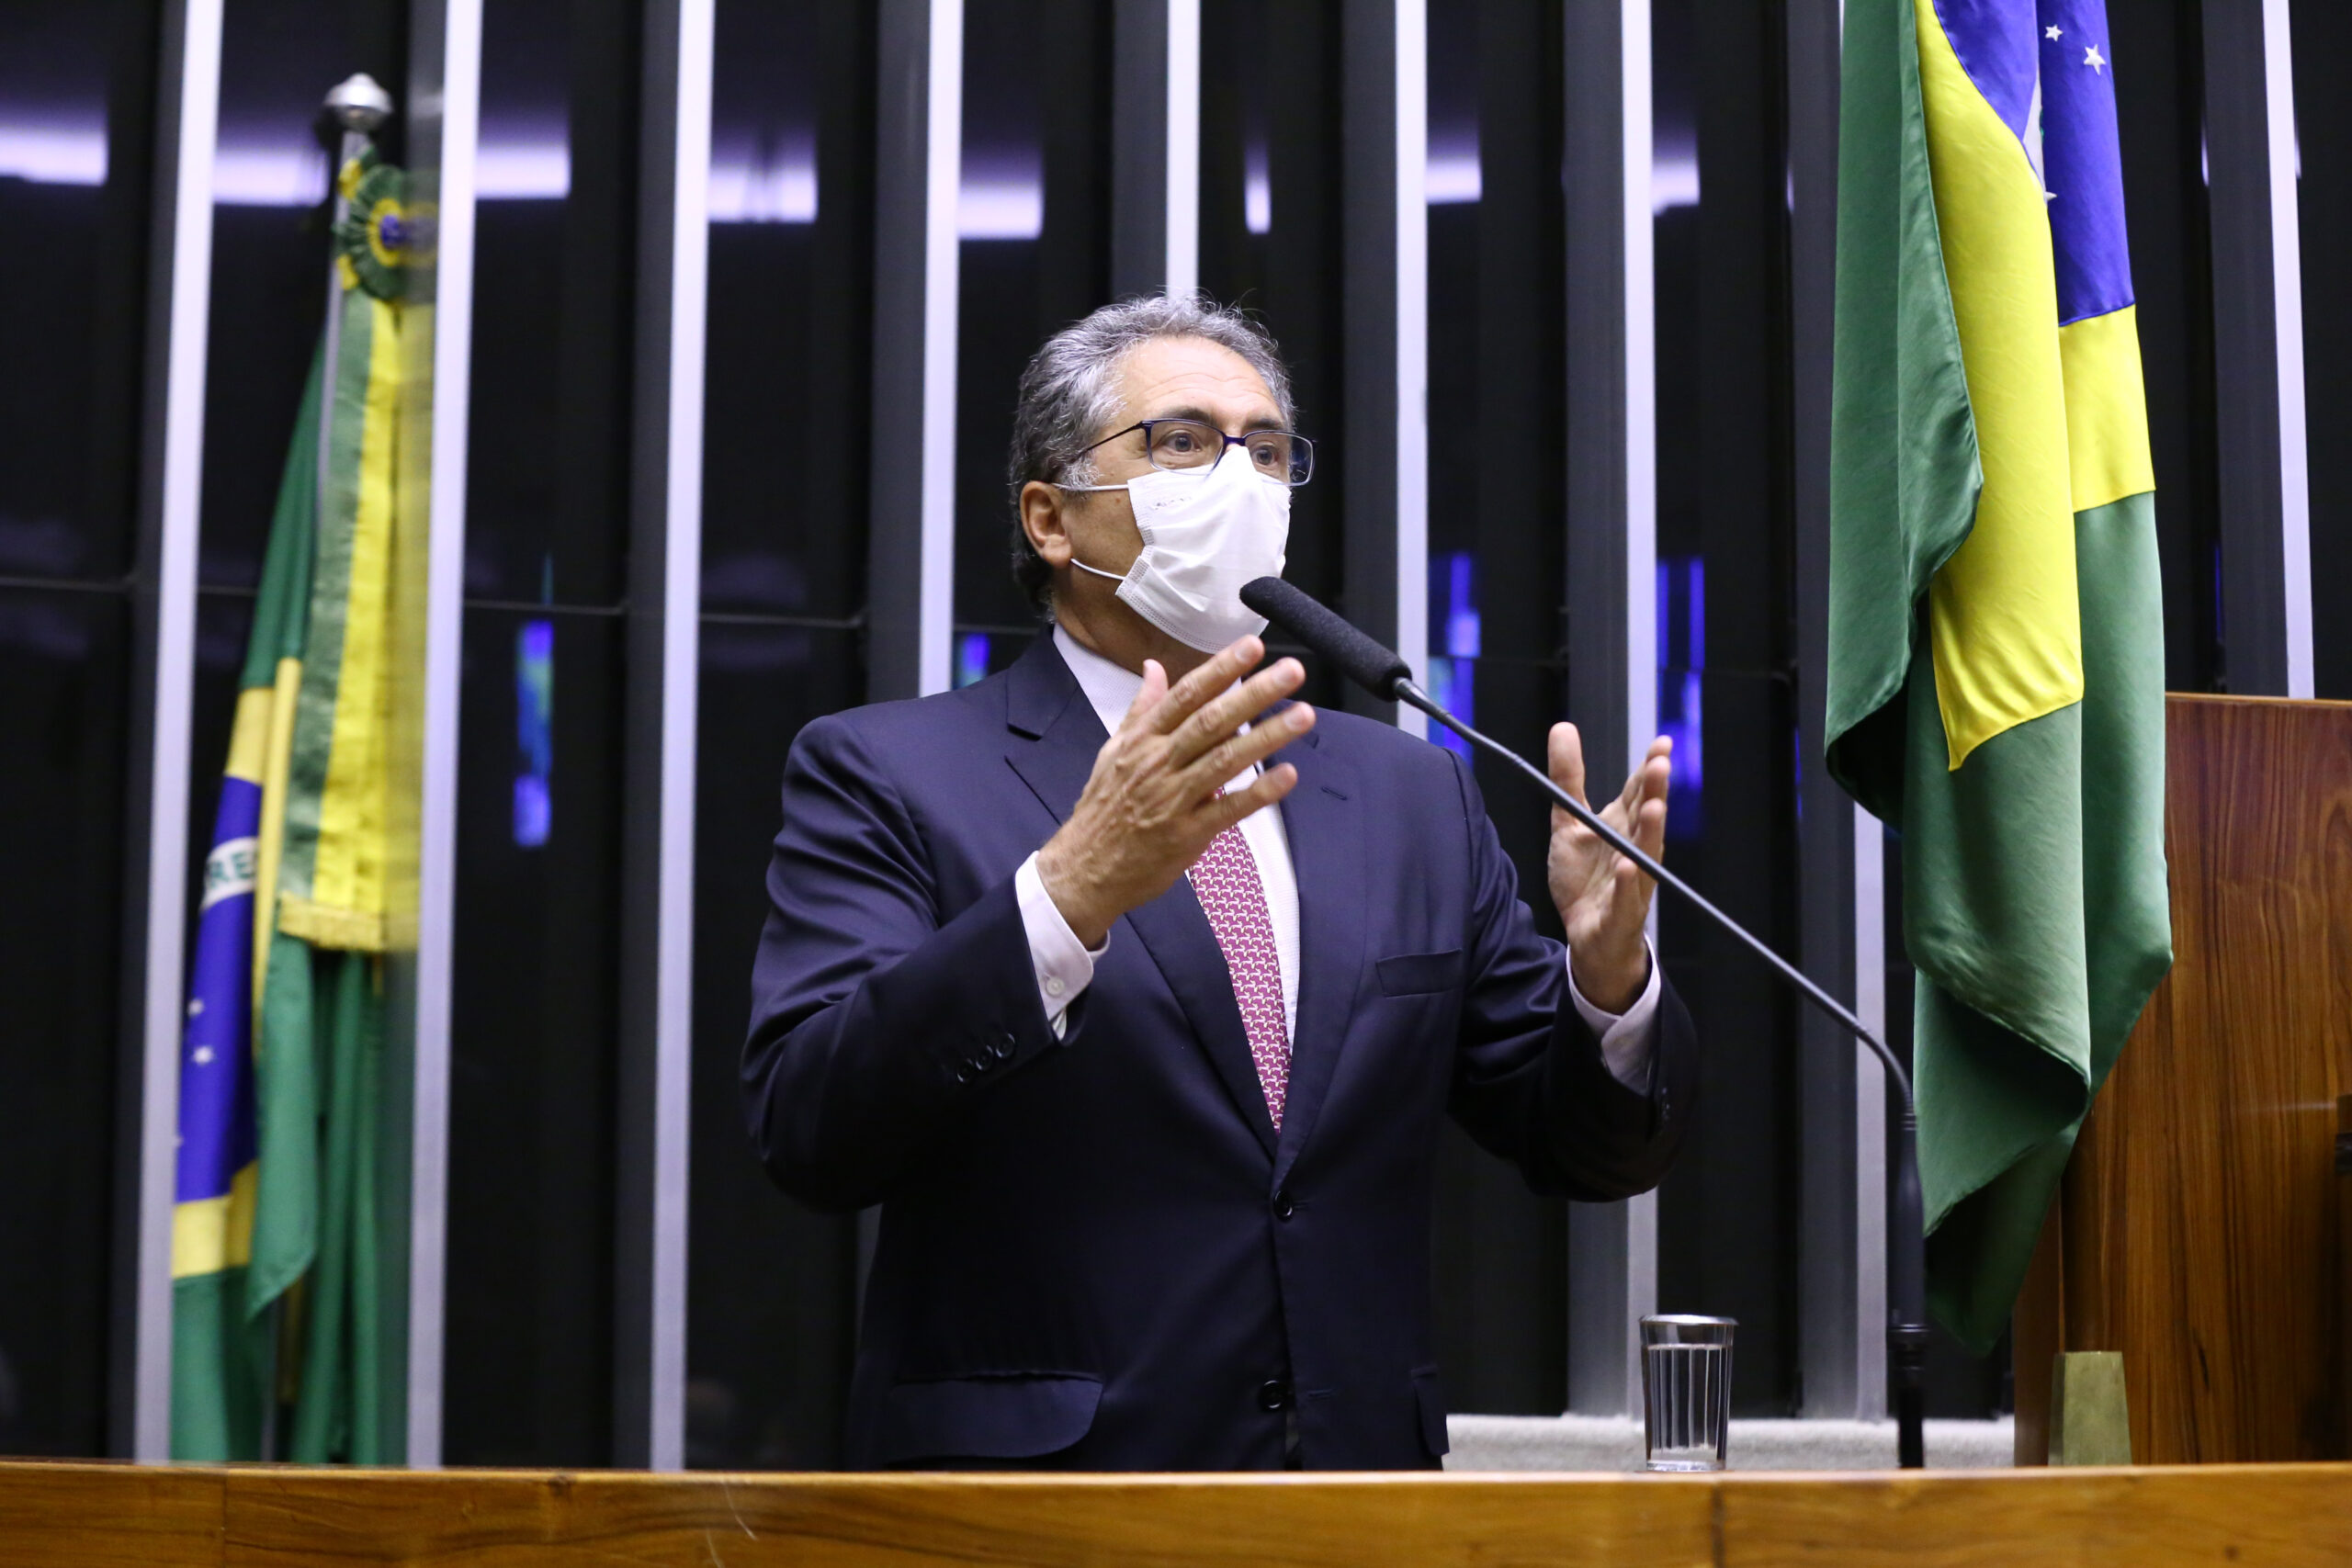 Declarações “estapafúrdias” de Bolsonaro sobre urna eletrônica tumultuam processo eleitoral, acusa Zarattini